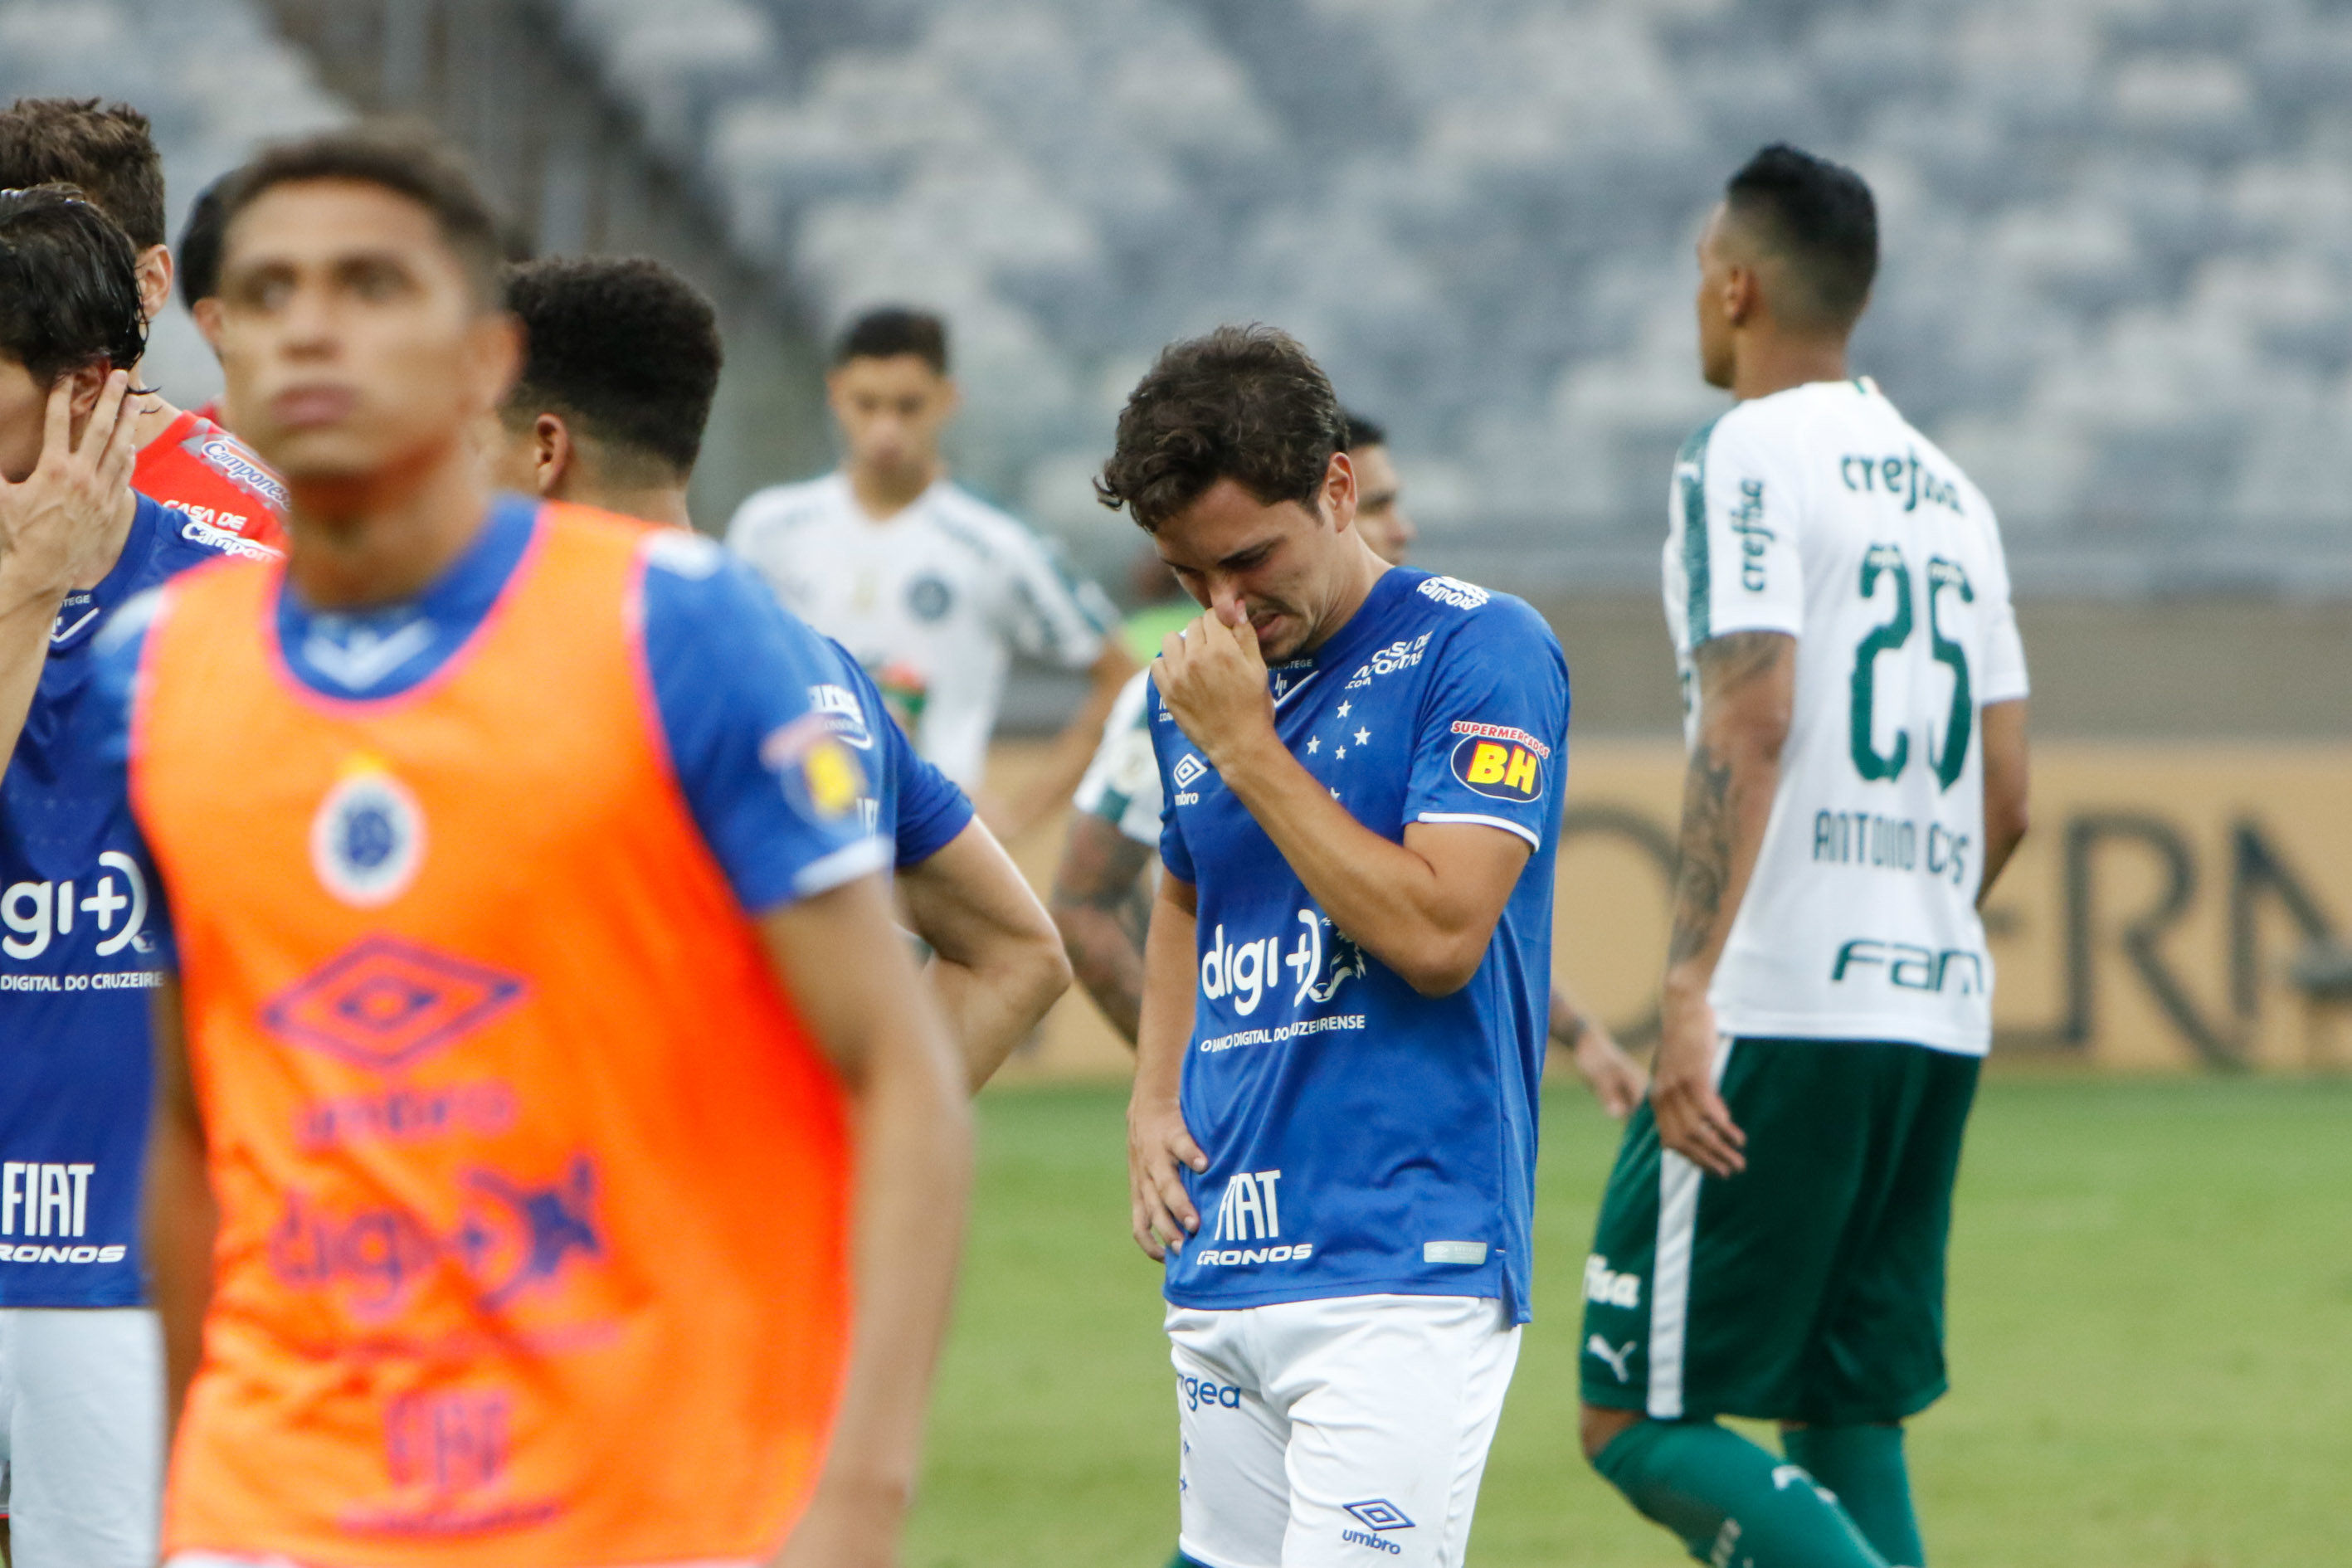 Cruzeiro - Em 2019, a Raposa fez uma campanha turbulenta e com muitos problemas fora do campo, que refletiram diretamente nas atuações da equipe. Com problemas financeiros, o clube foi rebaixado e irá disputar a série B do Brasileirão em 2020.